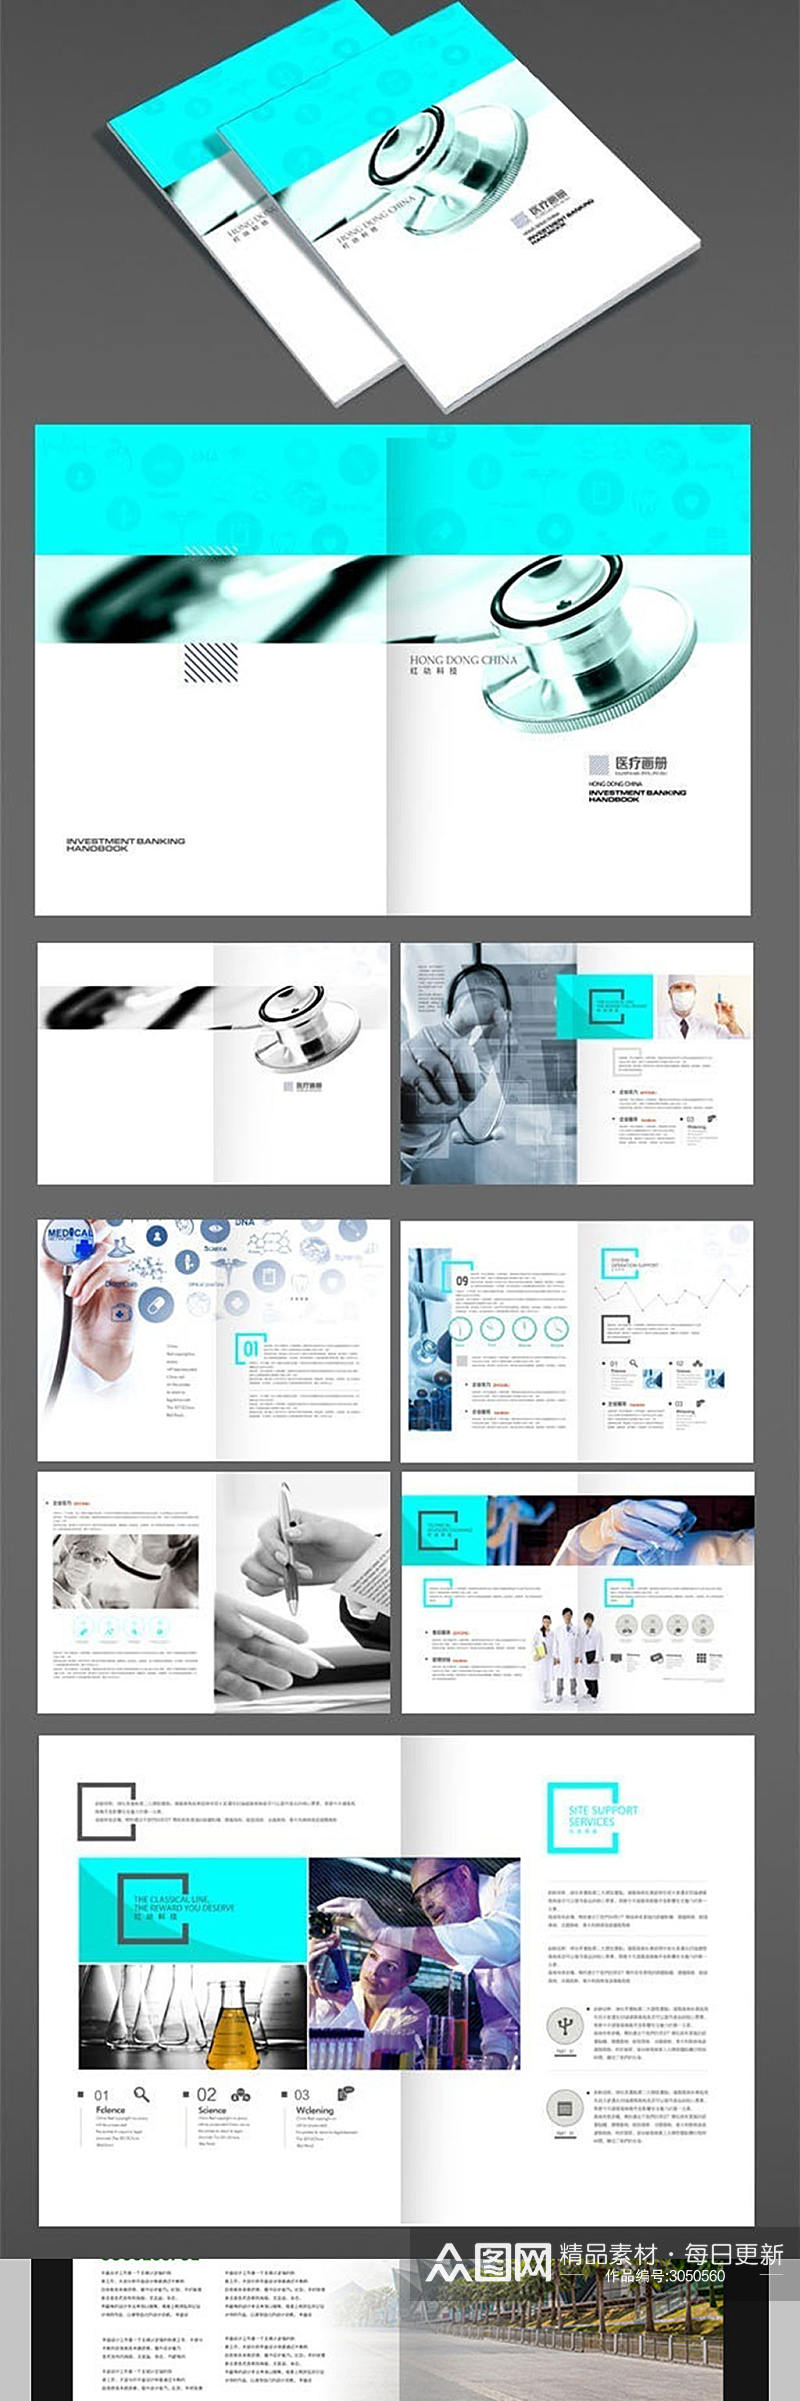 蓝色医疗画册设计素材